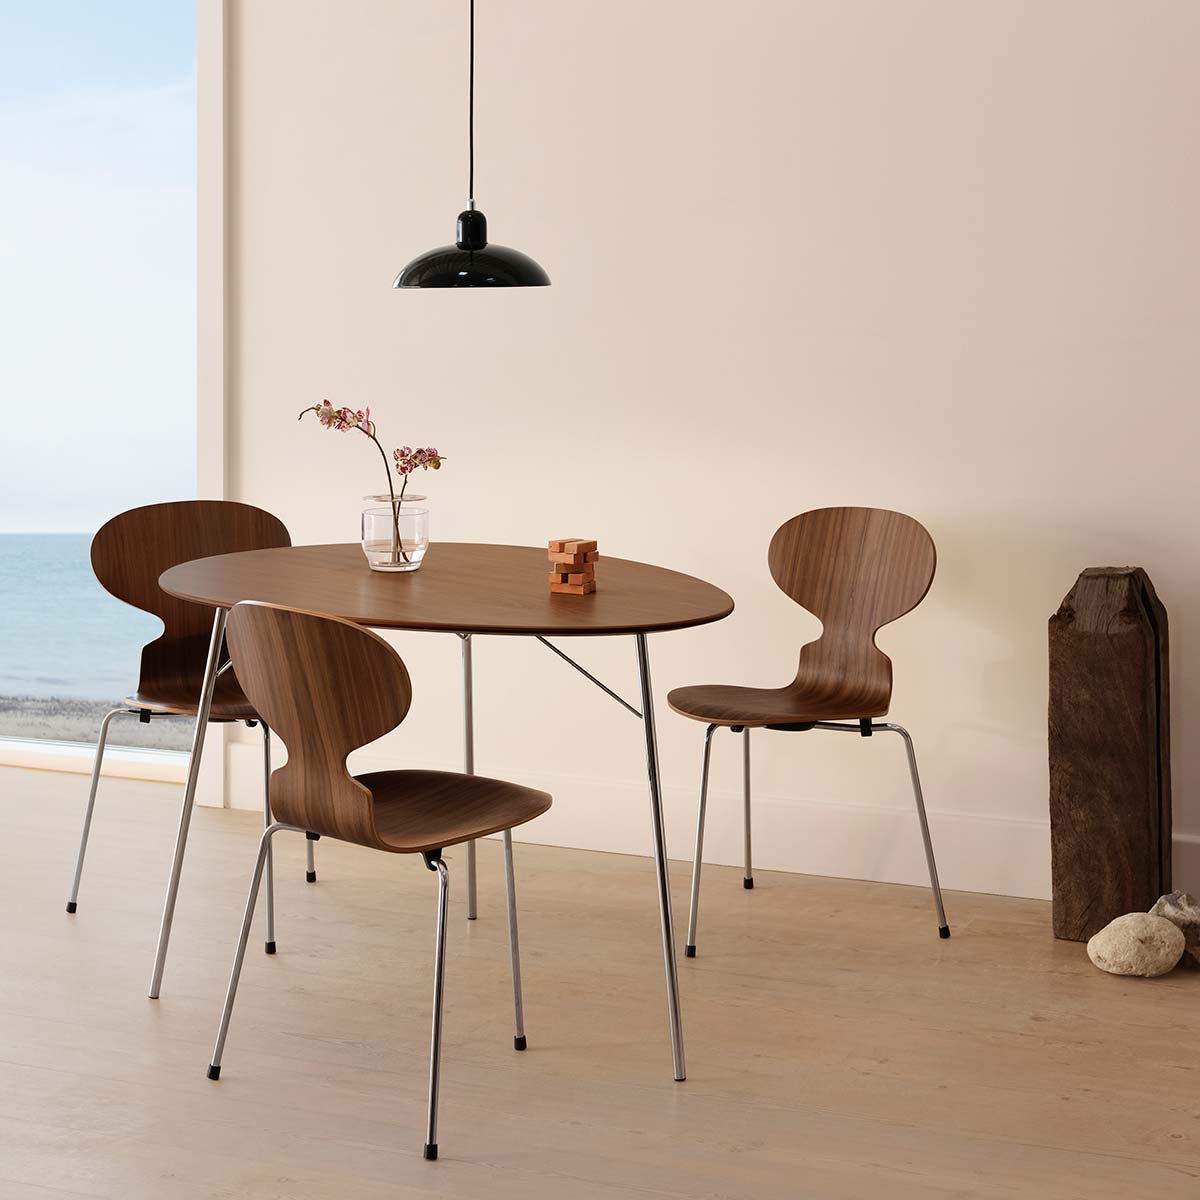 Egg table & Ant chairs by Fritz Hansen, Design Arne Jacobsen